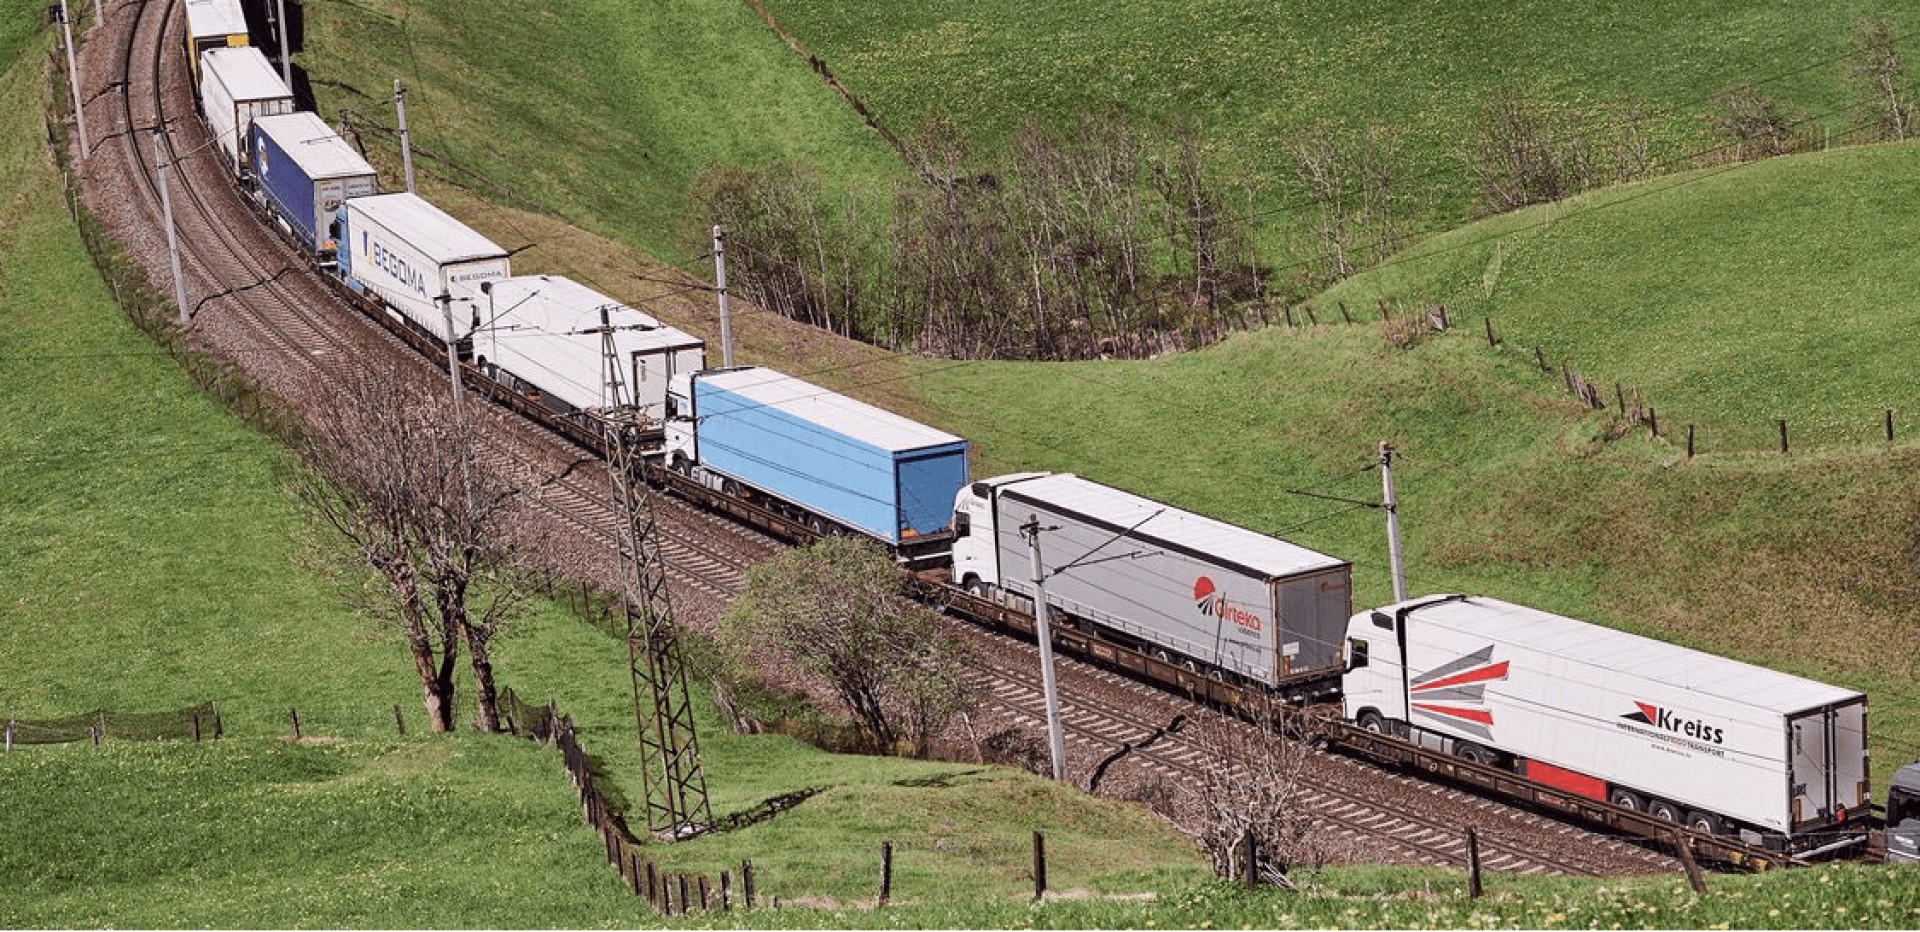 RAPORT Înlocuirea camioanelor cu trenurile în transportul de marfă nu aduce beneficii